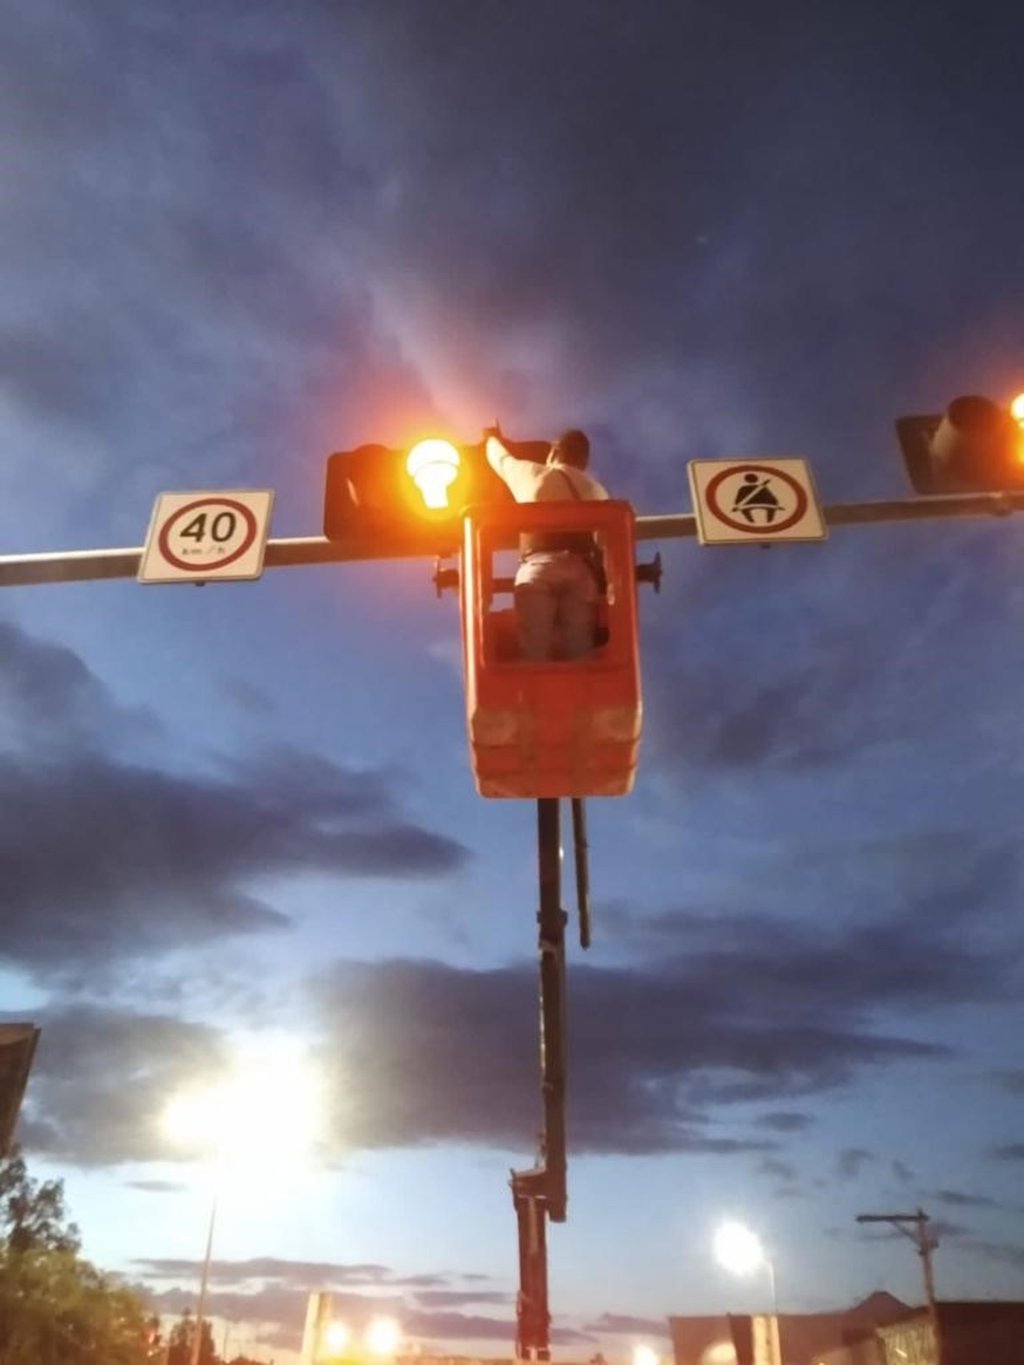 Sustituidos, 110 focos de semáforos